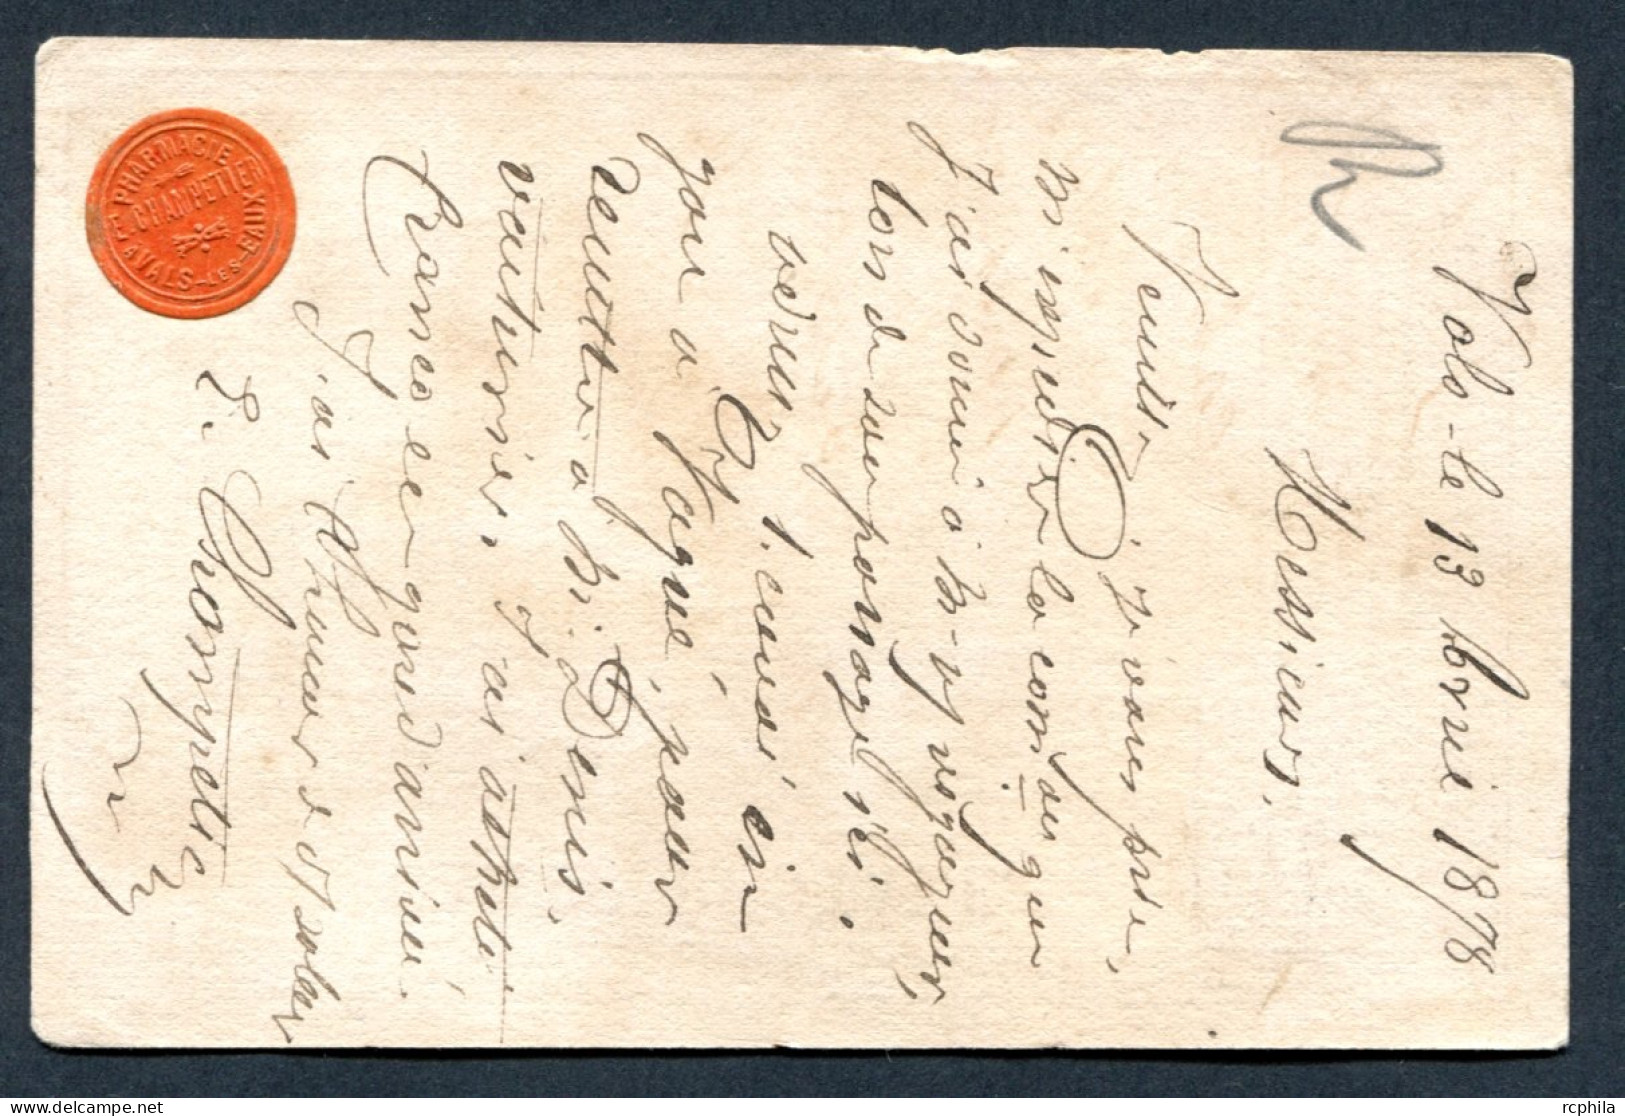 RC 27013 FRANCE 1878 ETIQUETTE COMMERCIALE PHARMACIE CHAMPETIER A VALS LES EAUX SUR CARTE PRECURSEUR - Precursor Cards